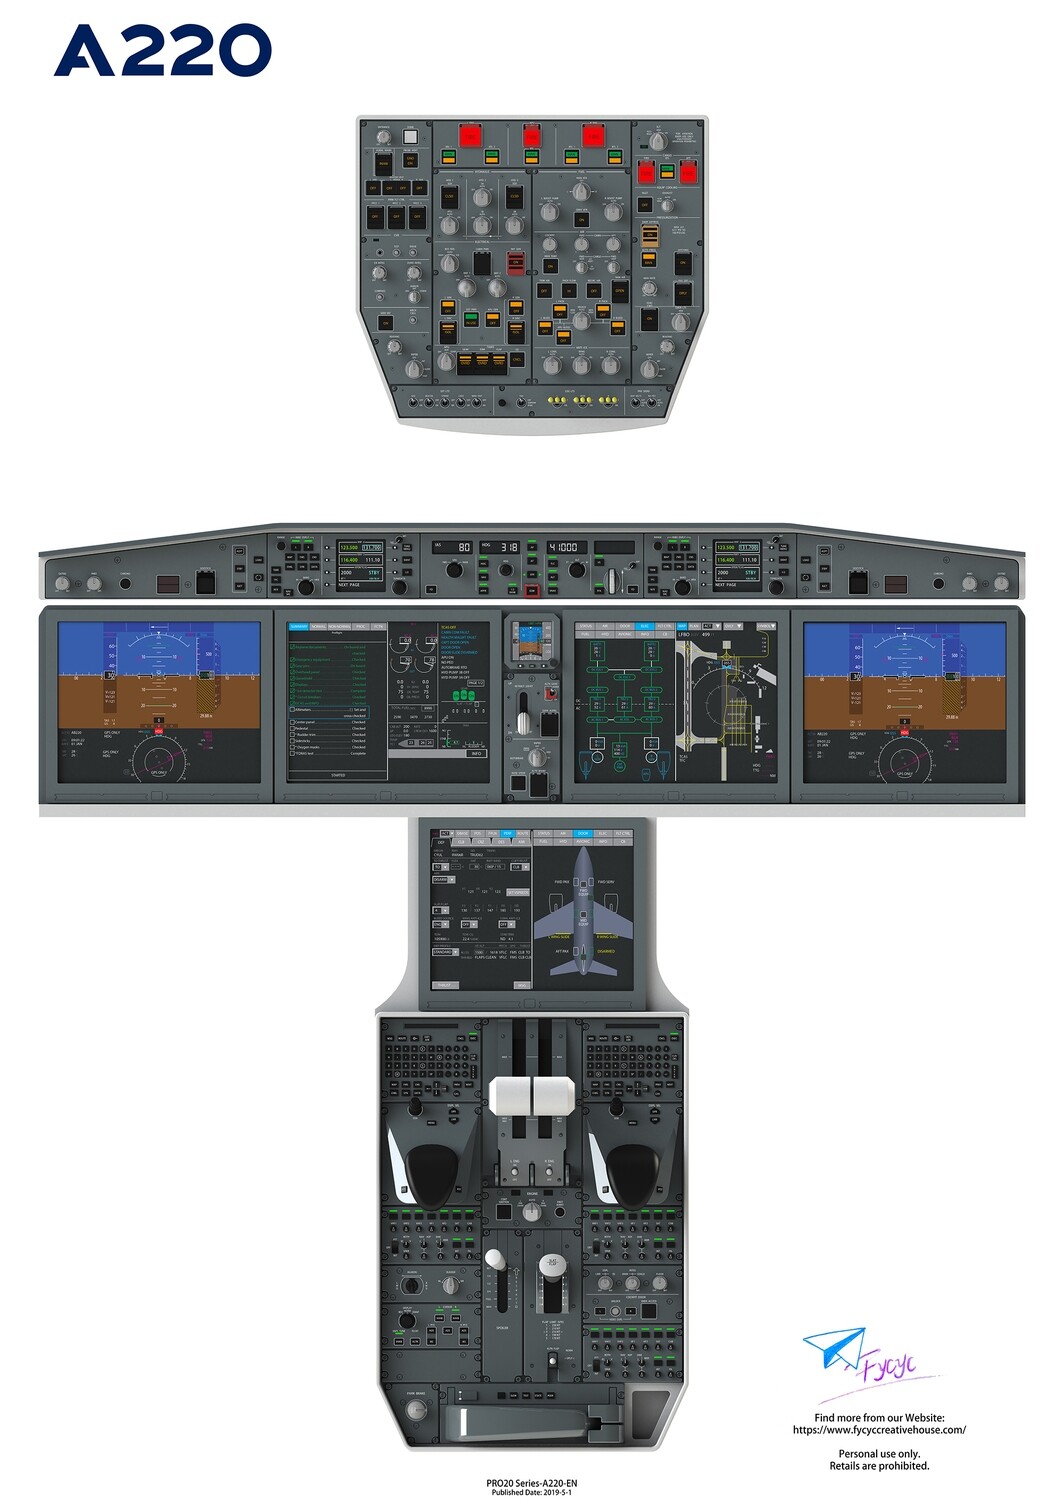 Airbus220/CS100 Cockpit Poster